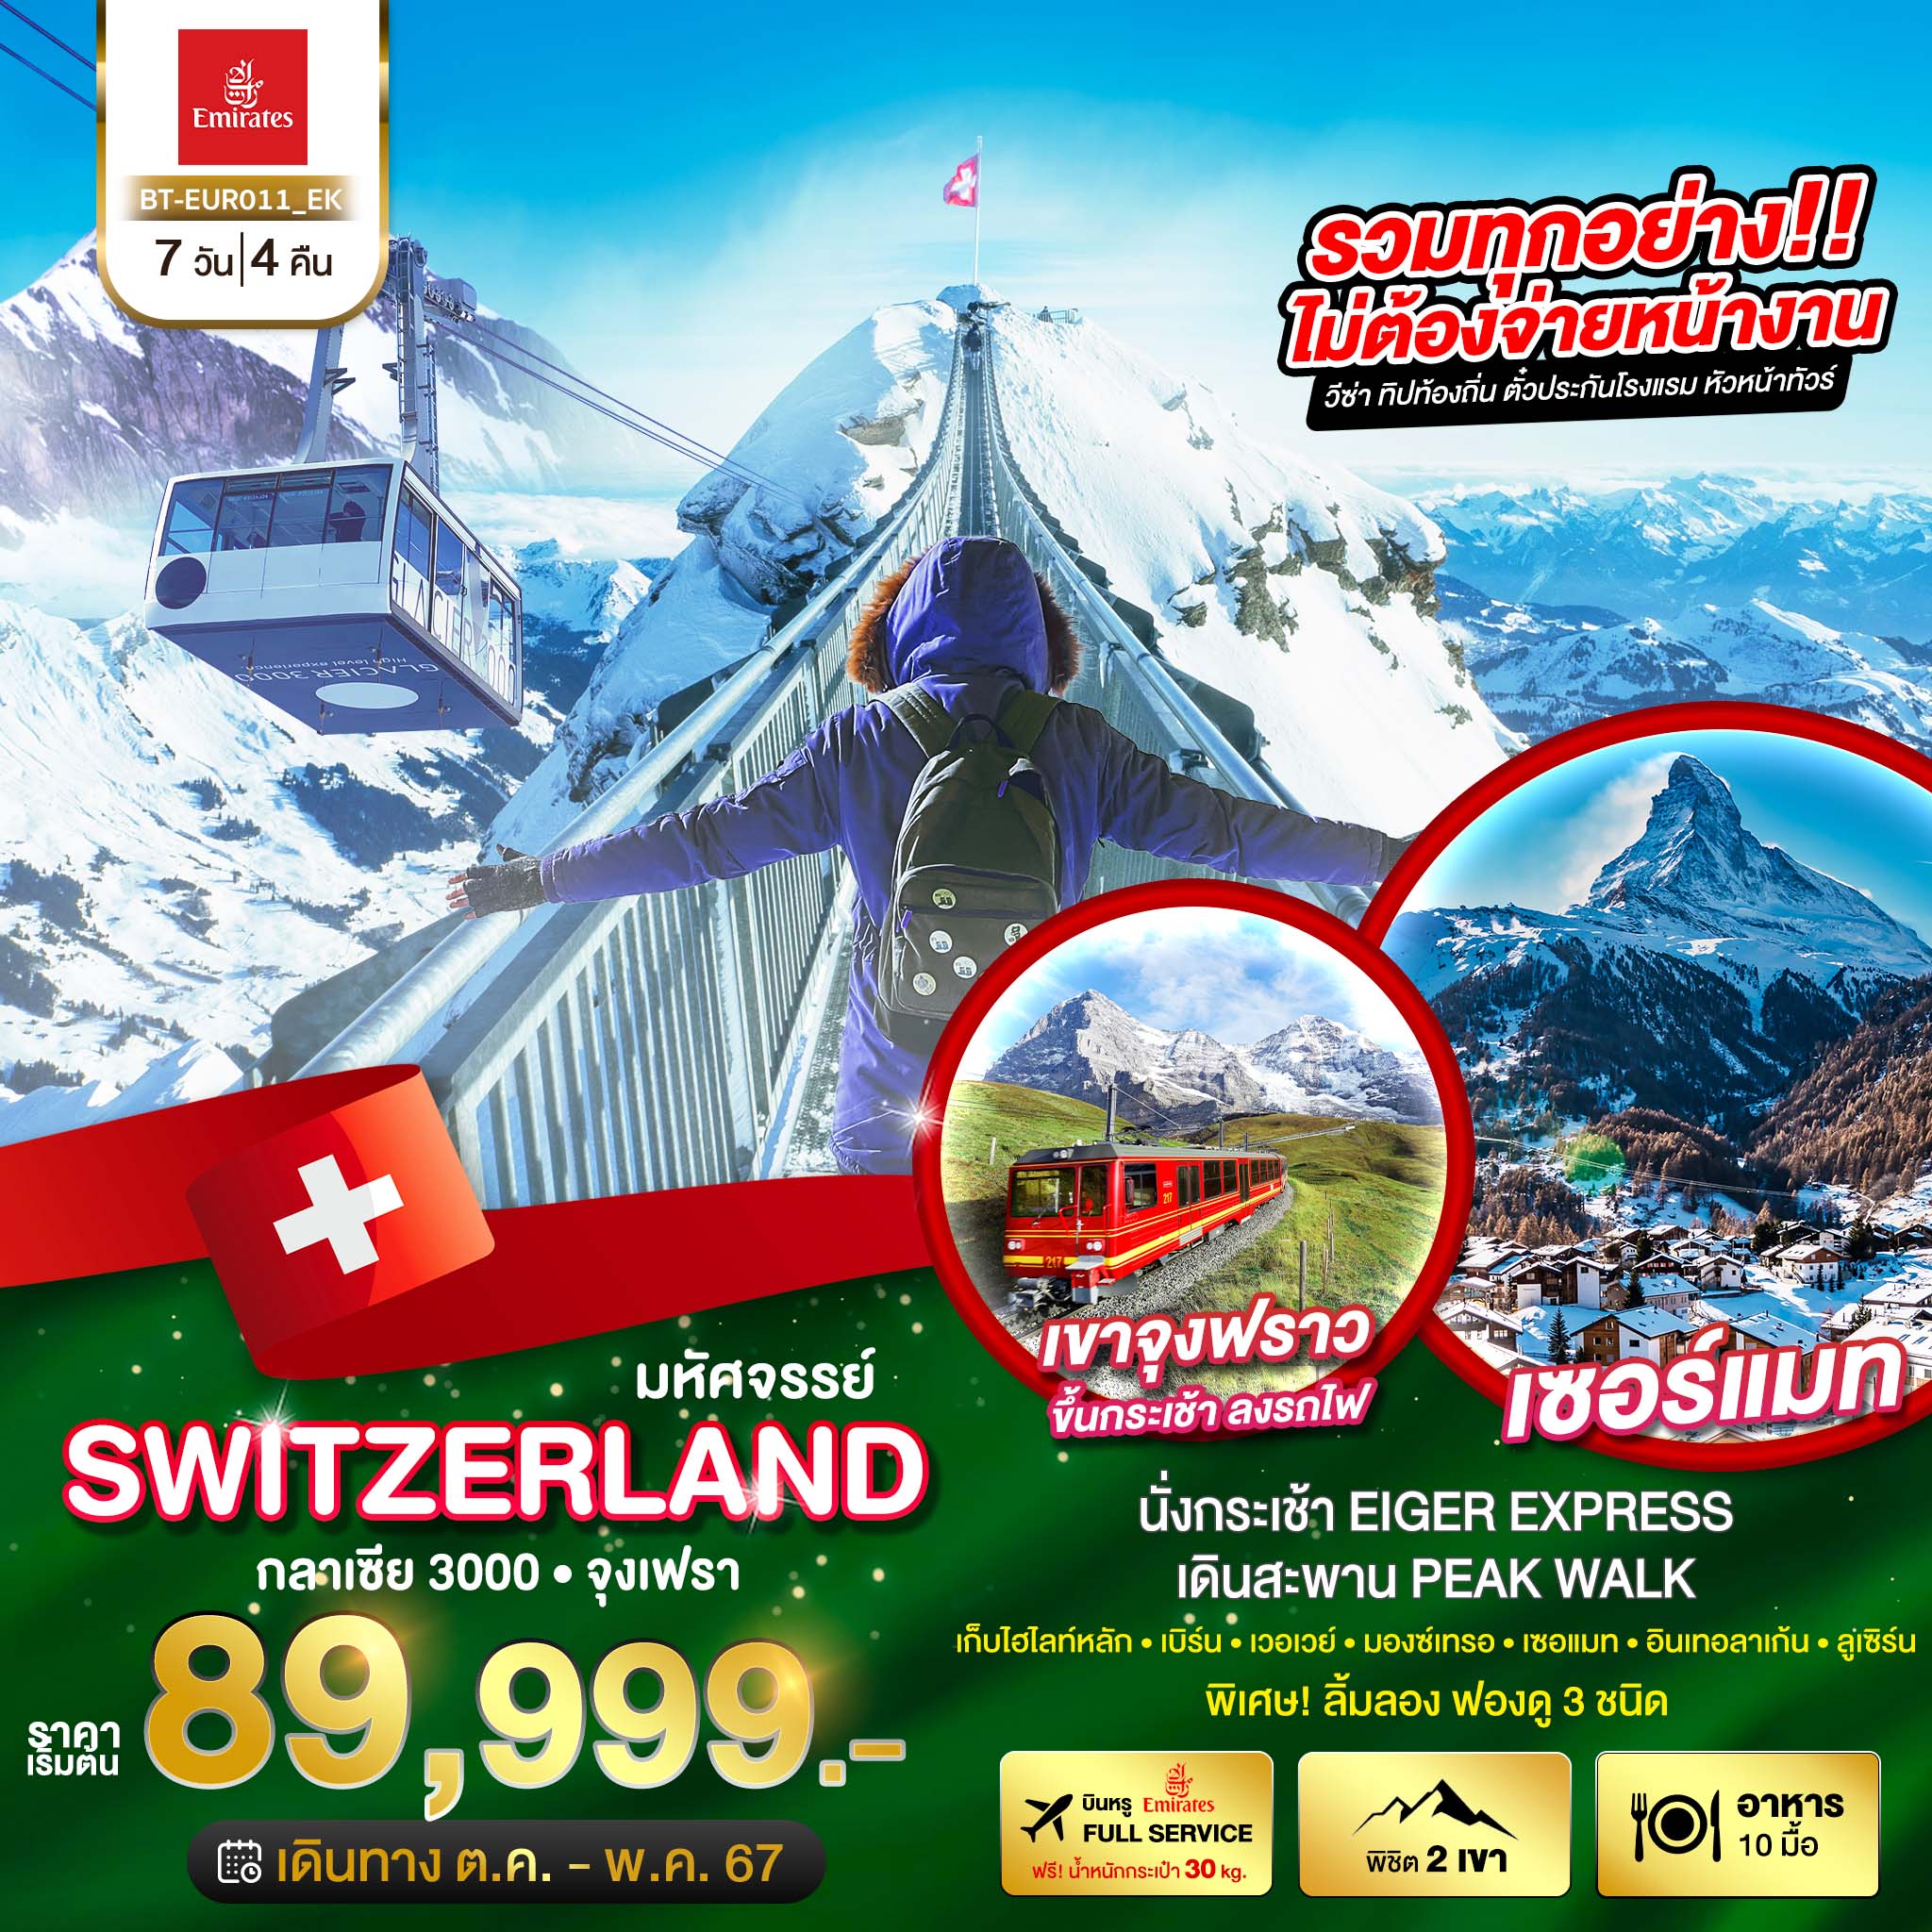 ทัวร์สวิตเซอร์แลนด์ มหัศจรรย์ SEMI สวิสเซอร์แลนด์ พิชิต 2 เขา กราเซีย 3000 จุงเฟรา 7วัน 4คืน